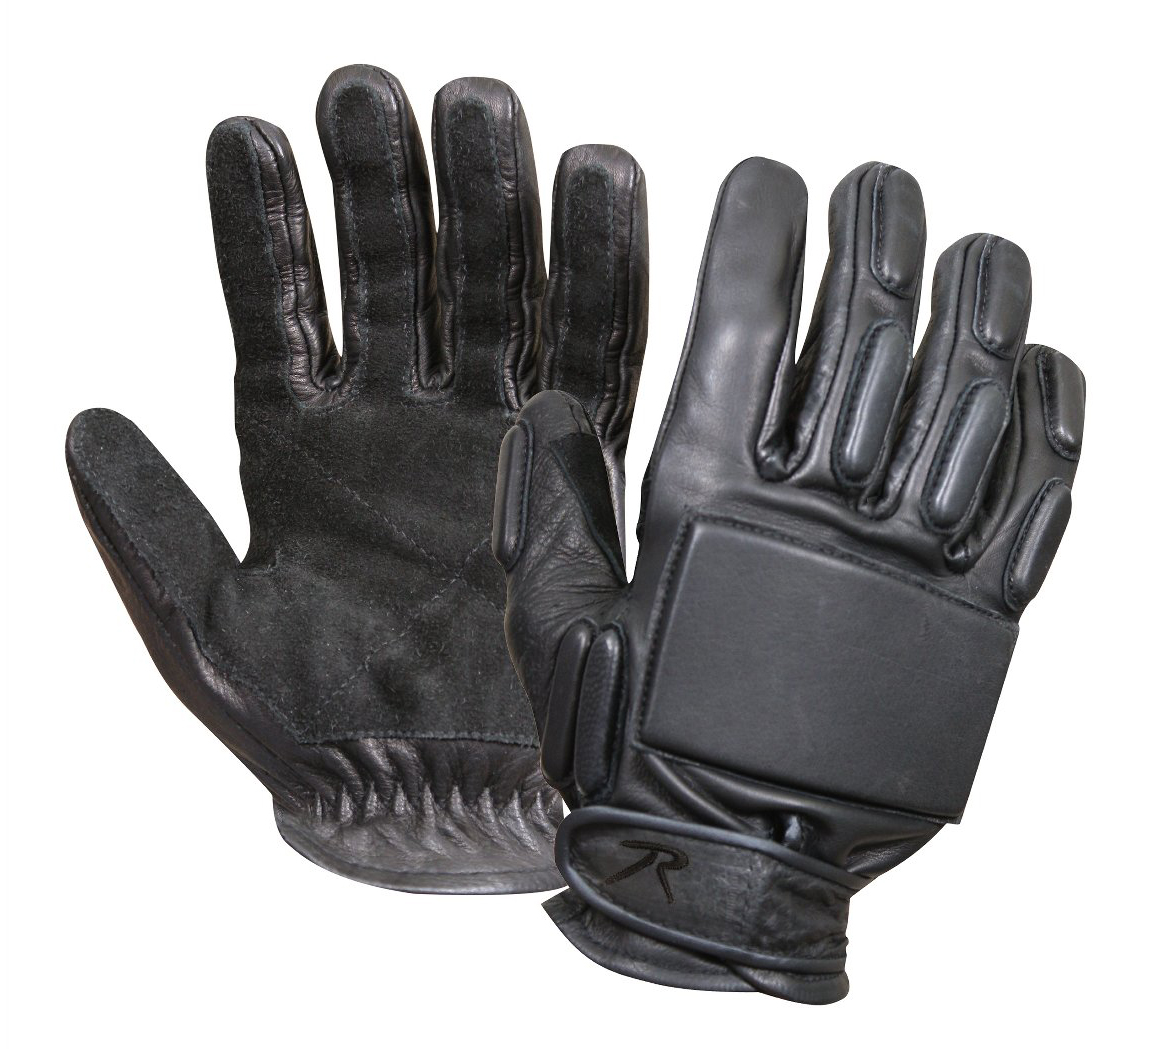 rappelling gloves